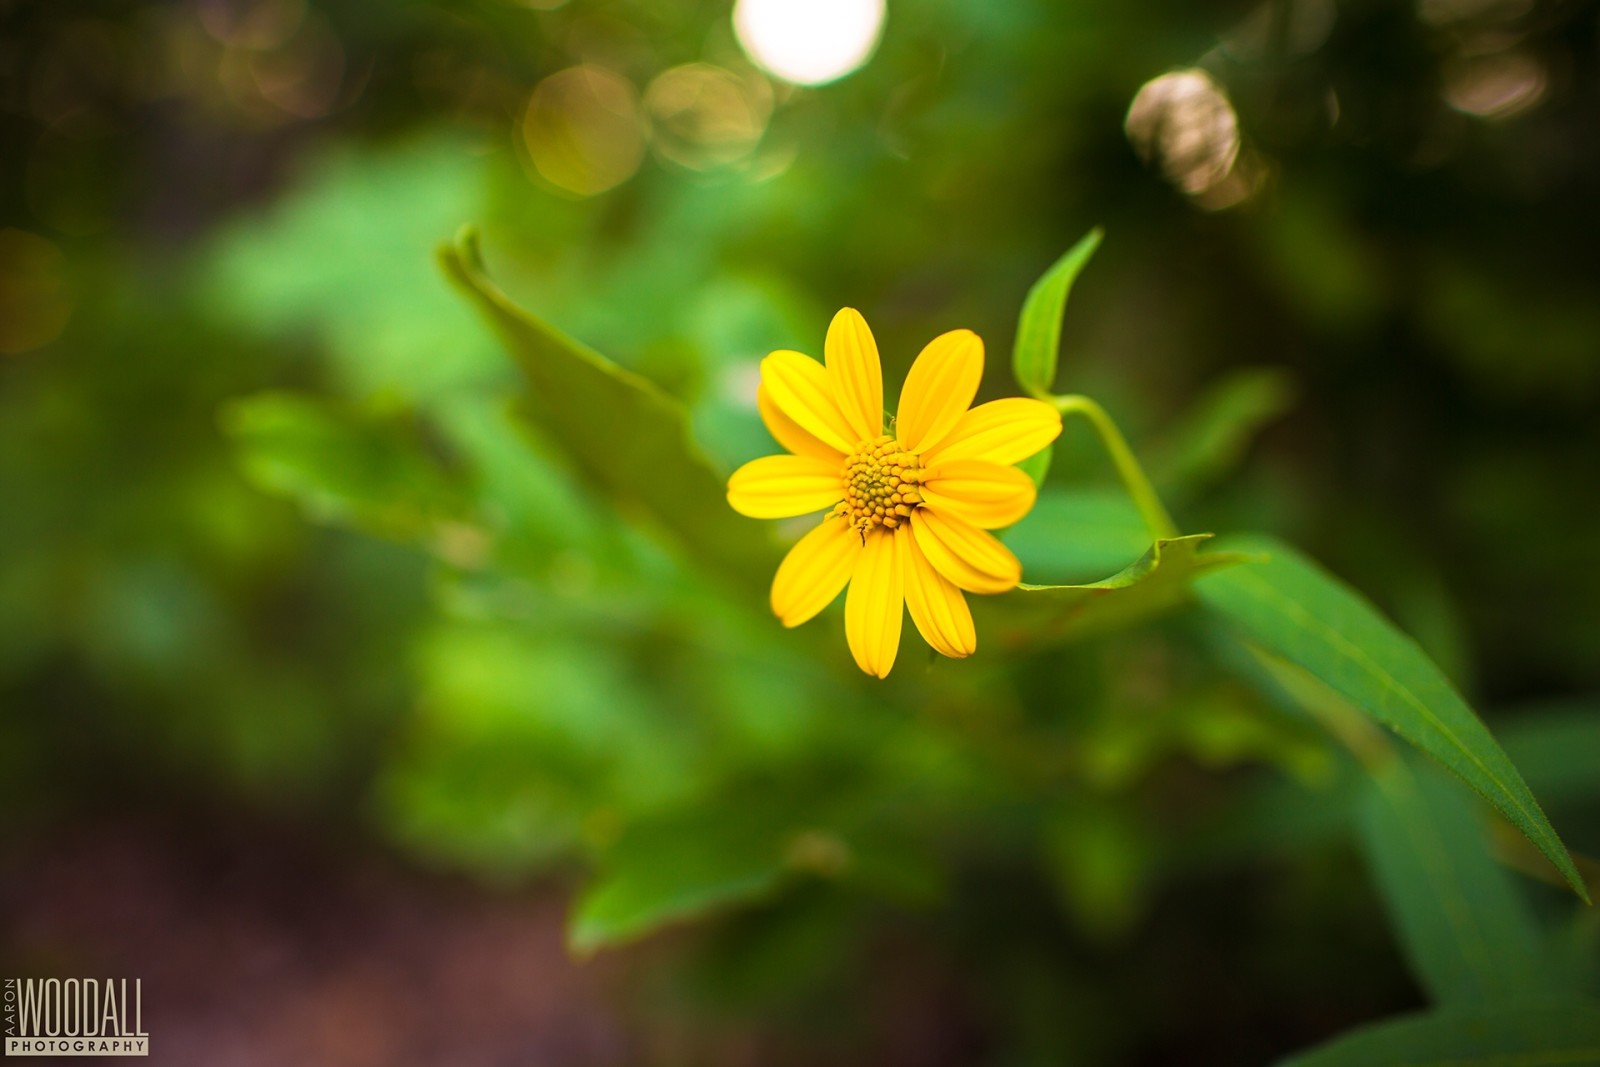 สีเหลือง, ดอกไม้, ช่างภาพ, ต้นกำเนิด, Aaron Woodall